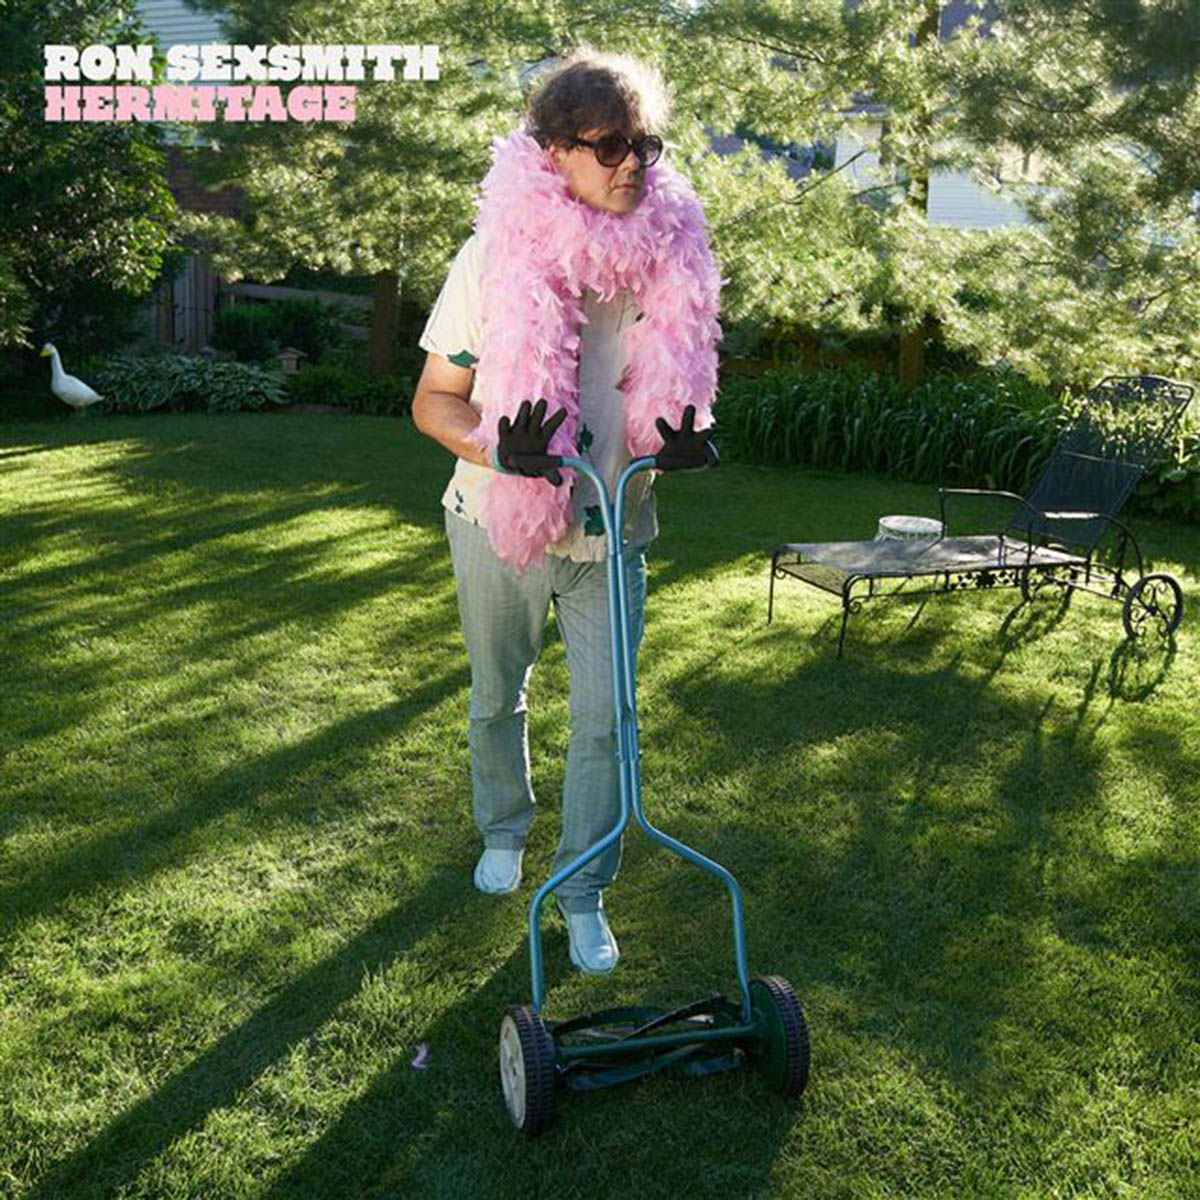 Ron Sexsmith Releases  “Hermitage” Album, November Tour